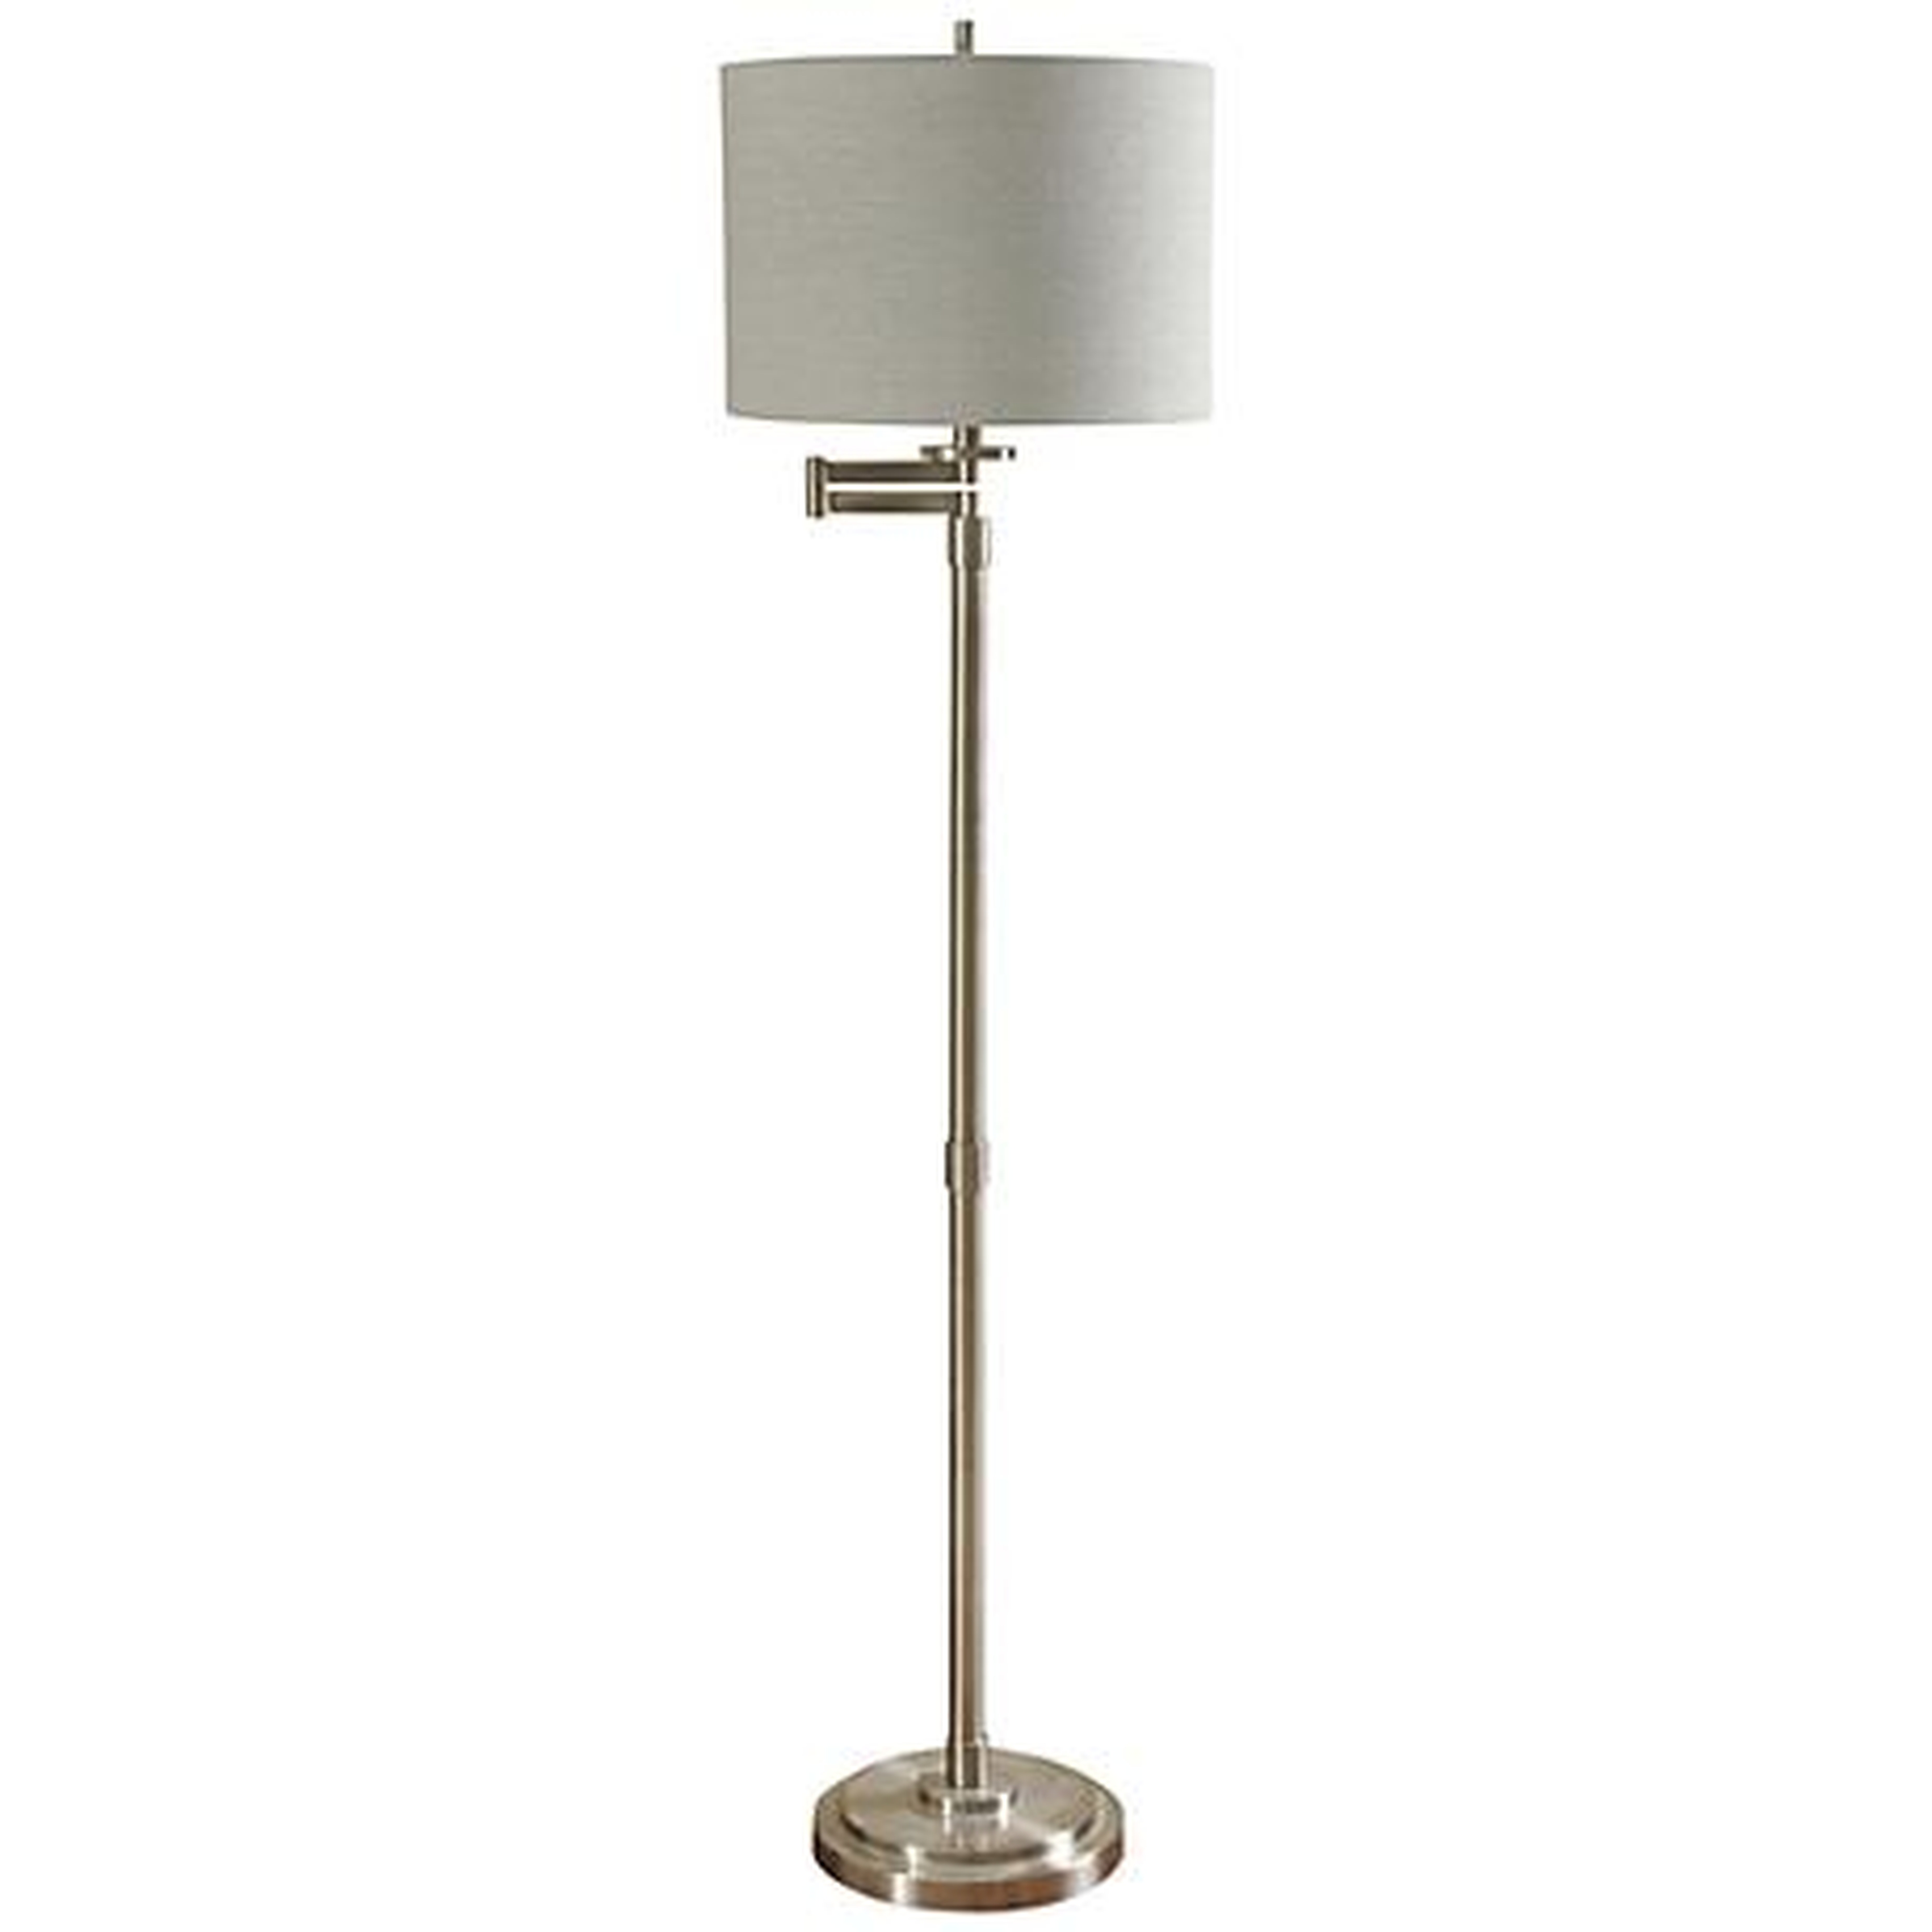 Kasaday Brushed Steel Swing Arm Floor Lamp silver - Lamps Plus